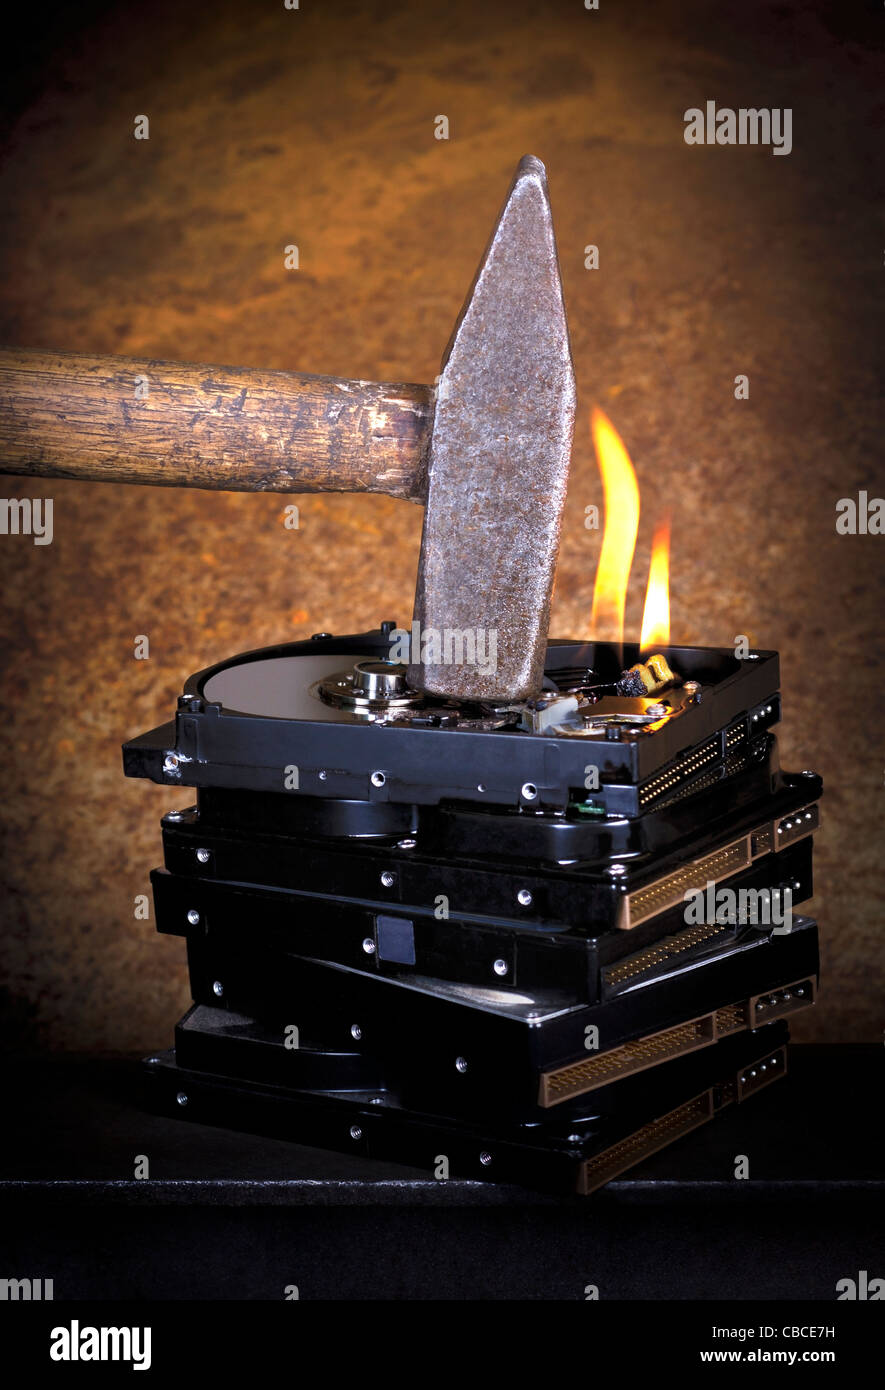 symbolische Daten Zerstörung Thema zeigt die Details eines Hammers auf ein Stapel brennen Festplatten vor rostigen zurück Stockfoto